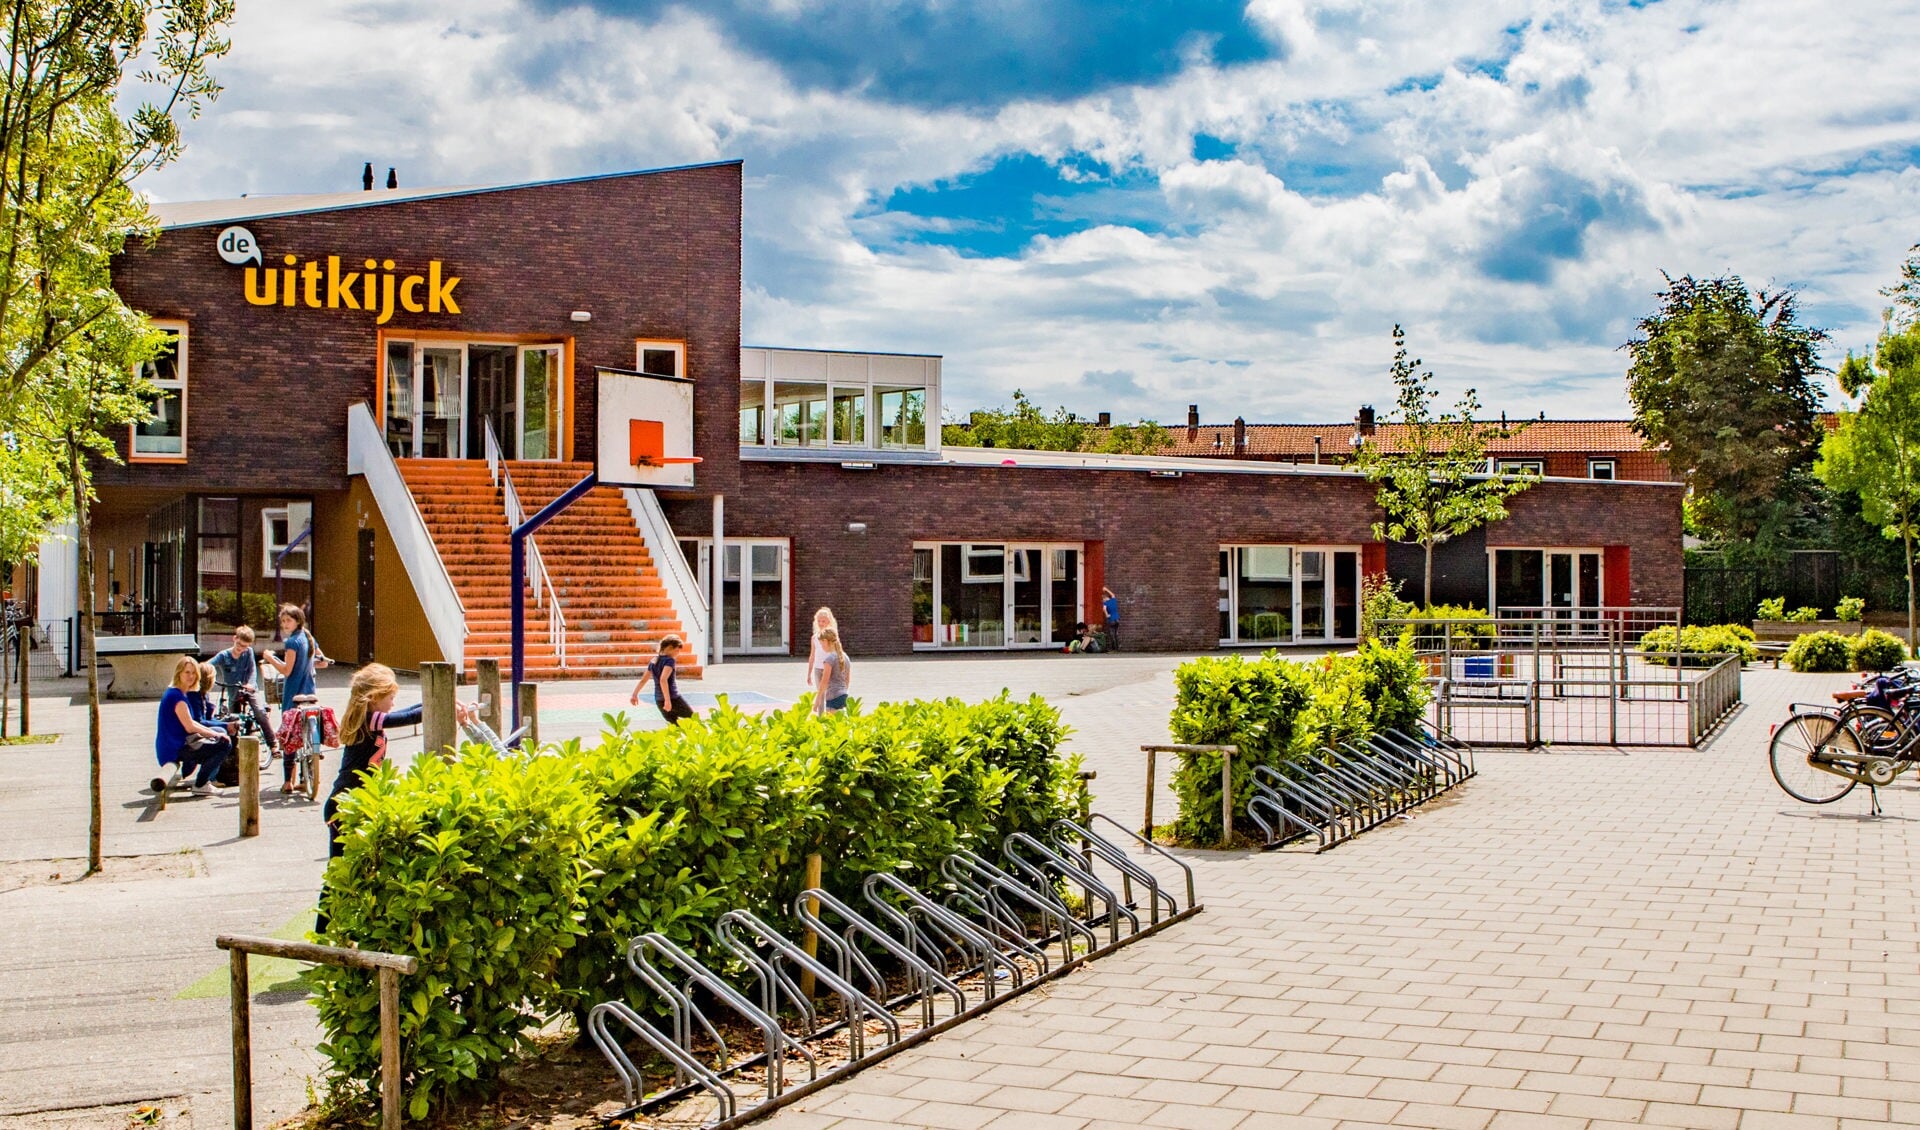 Basisschool De Uitkijck